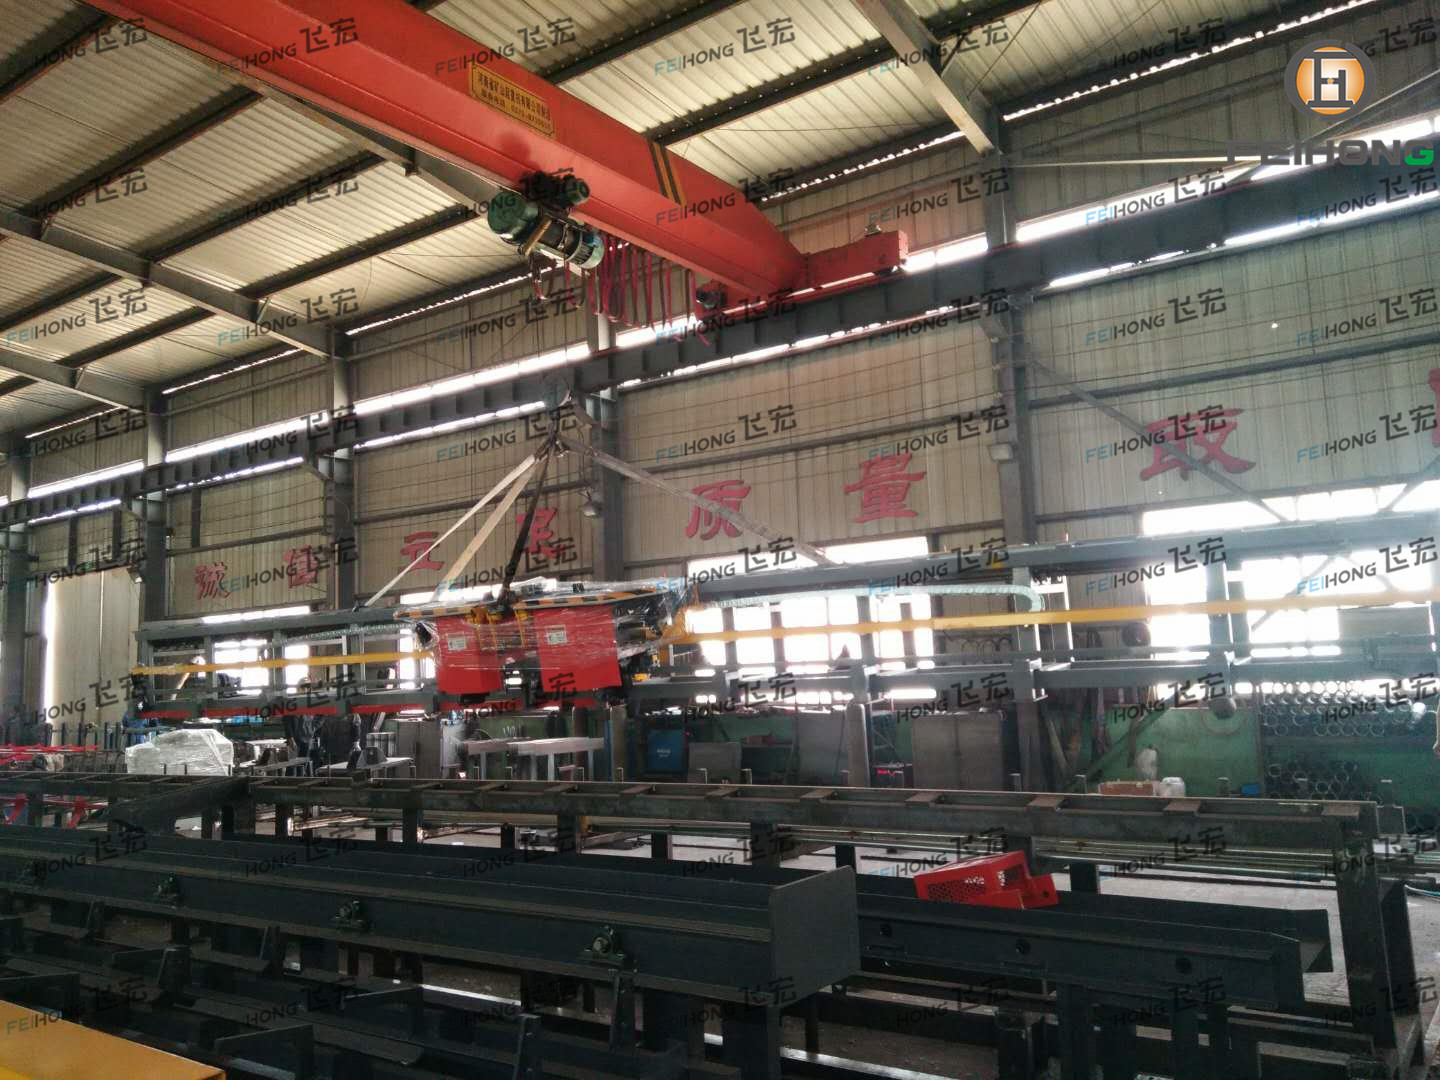 祝贺飞宏1套钢筋加工设备进驻中国中铁一局集团天津公司京德高速项目施工现场